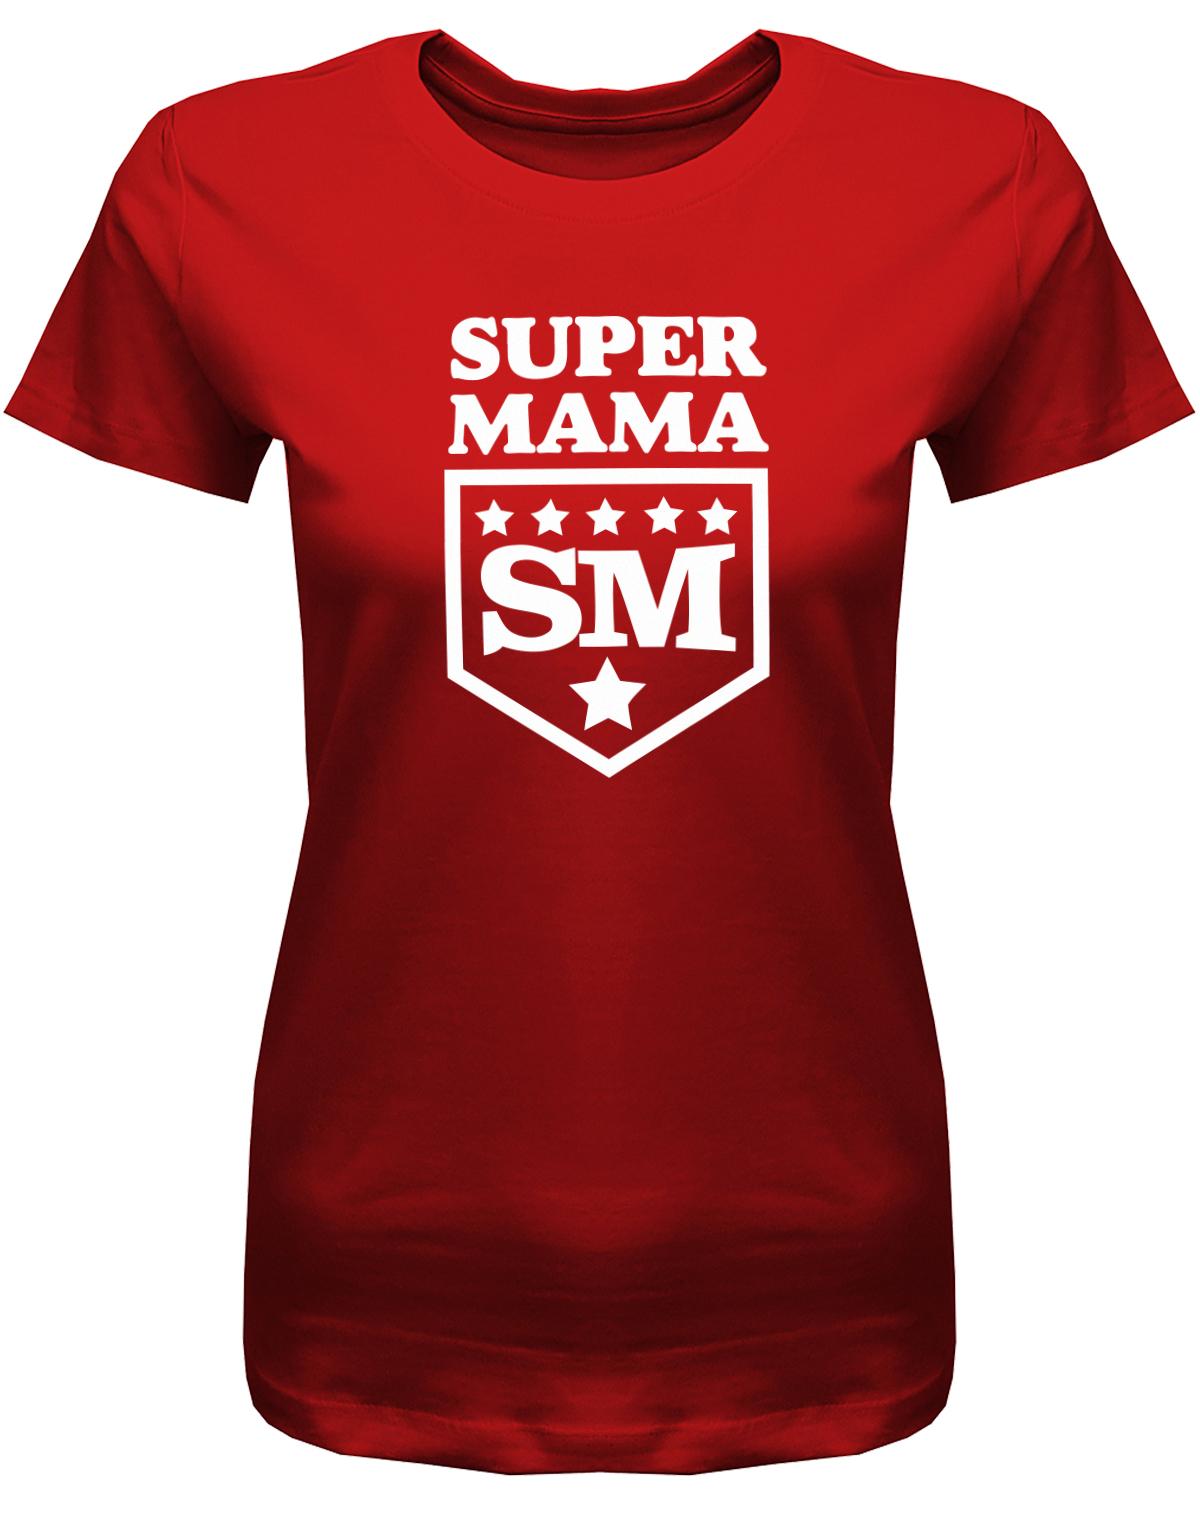 Super-Mama-Sterne-Damen-Shirt-Rot